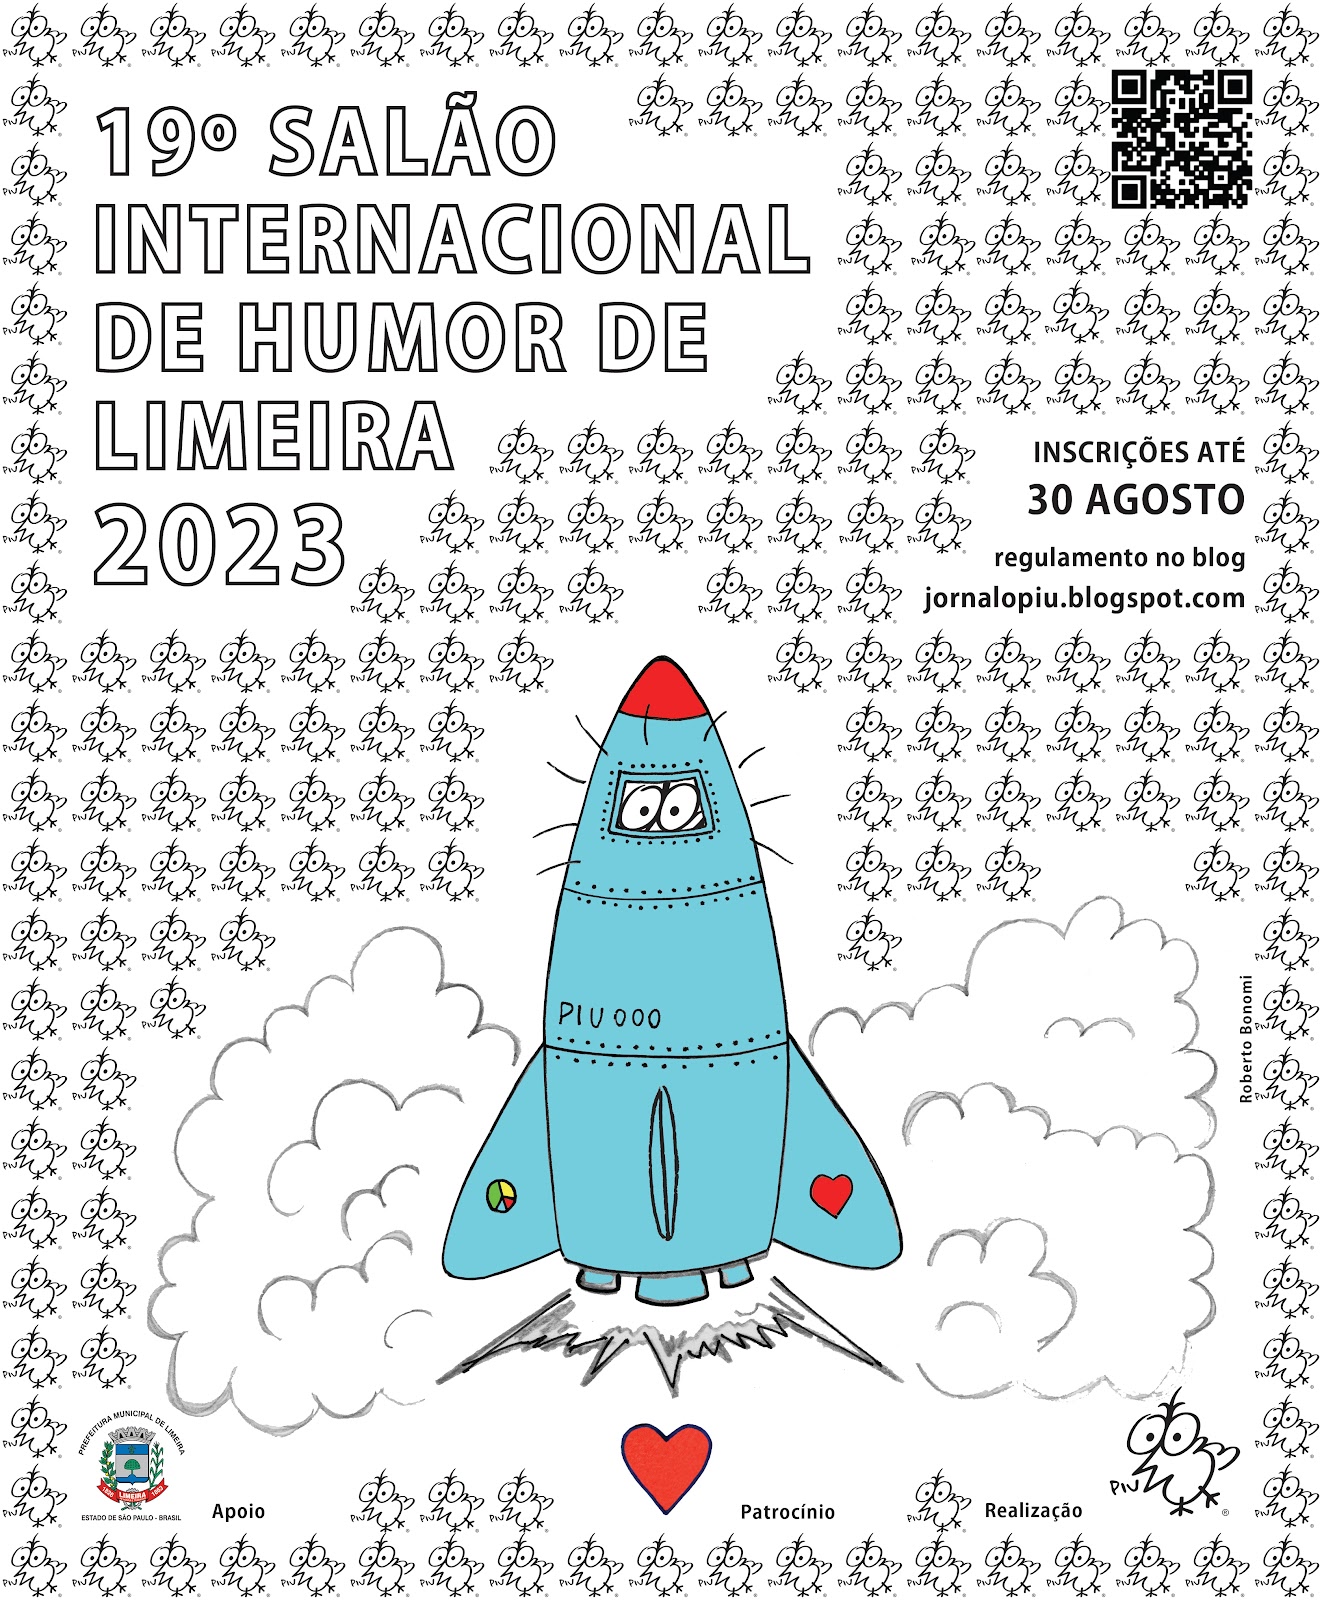 19º SALÃO  INTERNACIONAL  DE HUMOR  DE LIMEIRA 2023